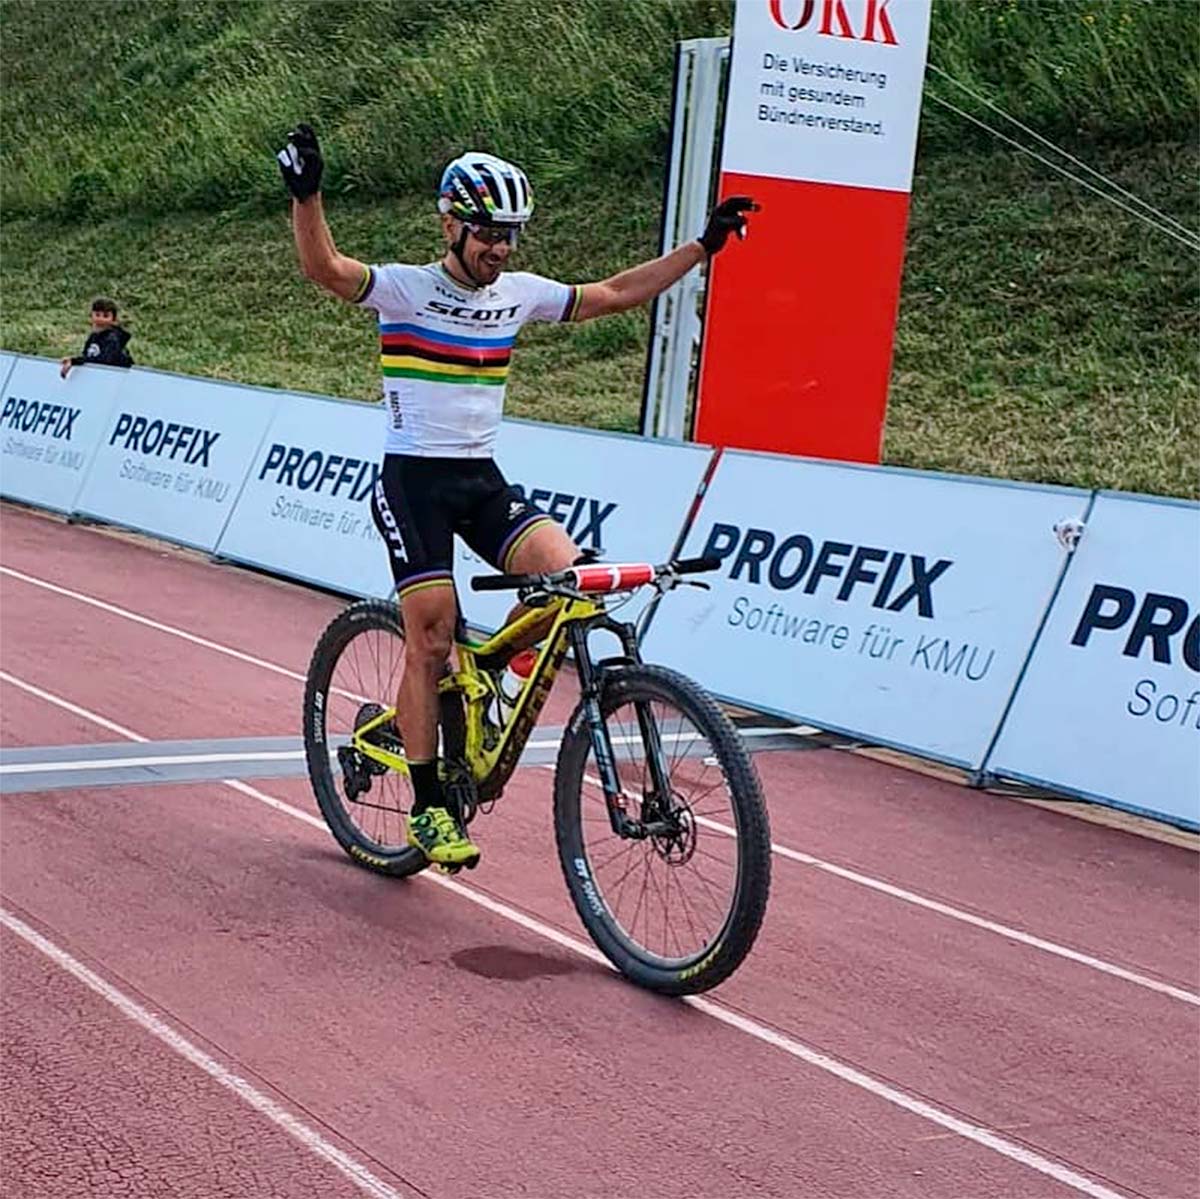 En TodoMountainBike: Nino Schurter y Sina Frei ganan la Proffix Swiss Bike Cup de Leukerbad, la primera carrera de MTB de alto nivel tras la pandemia